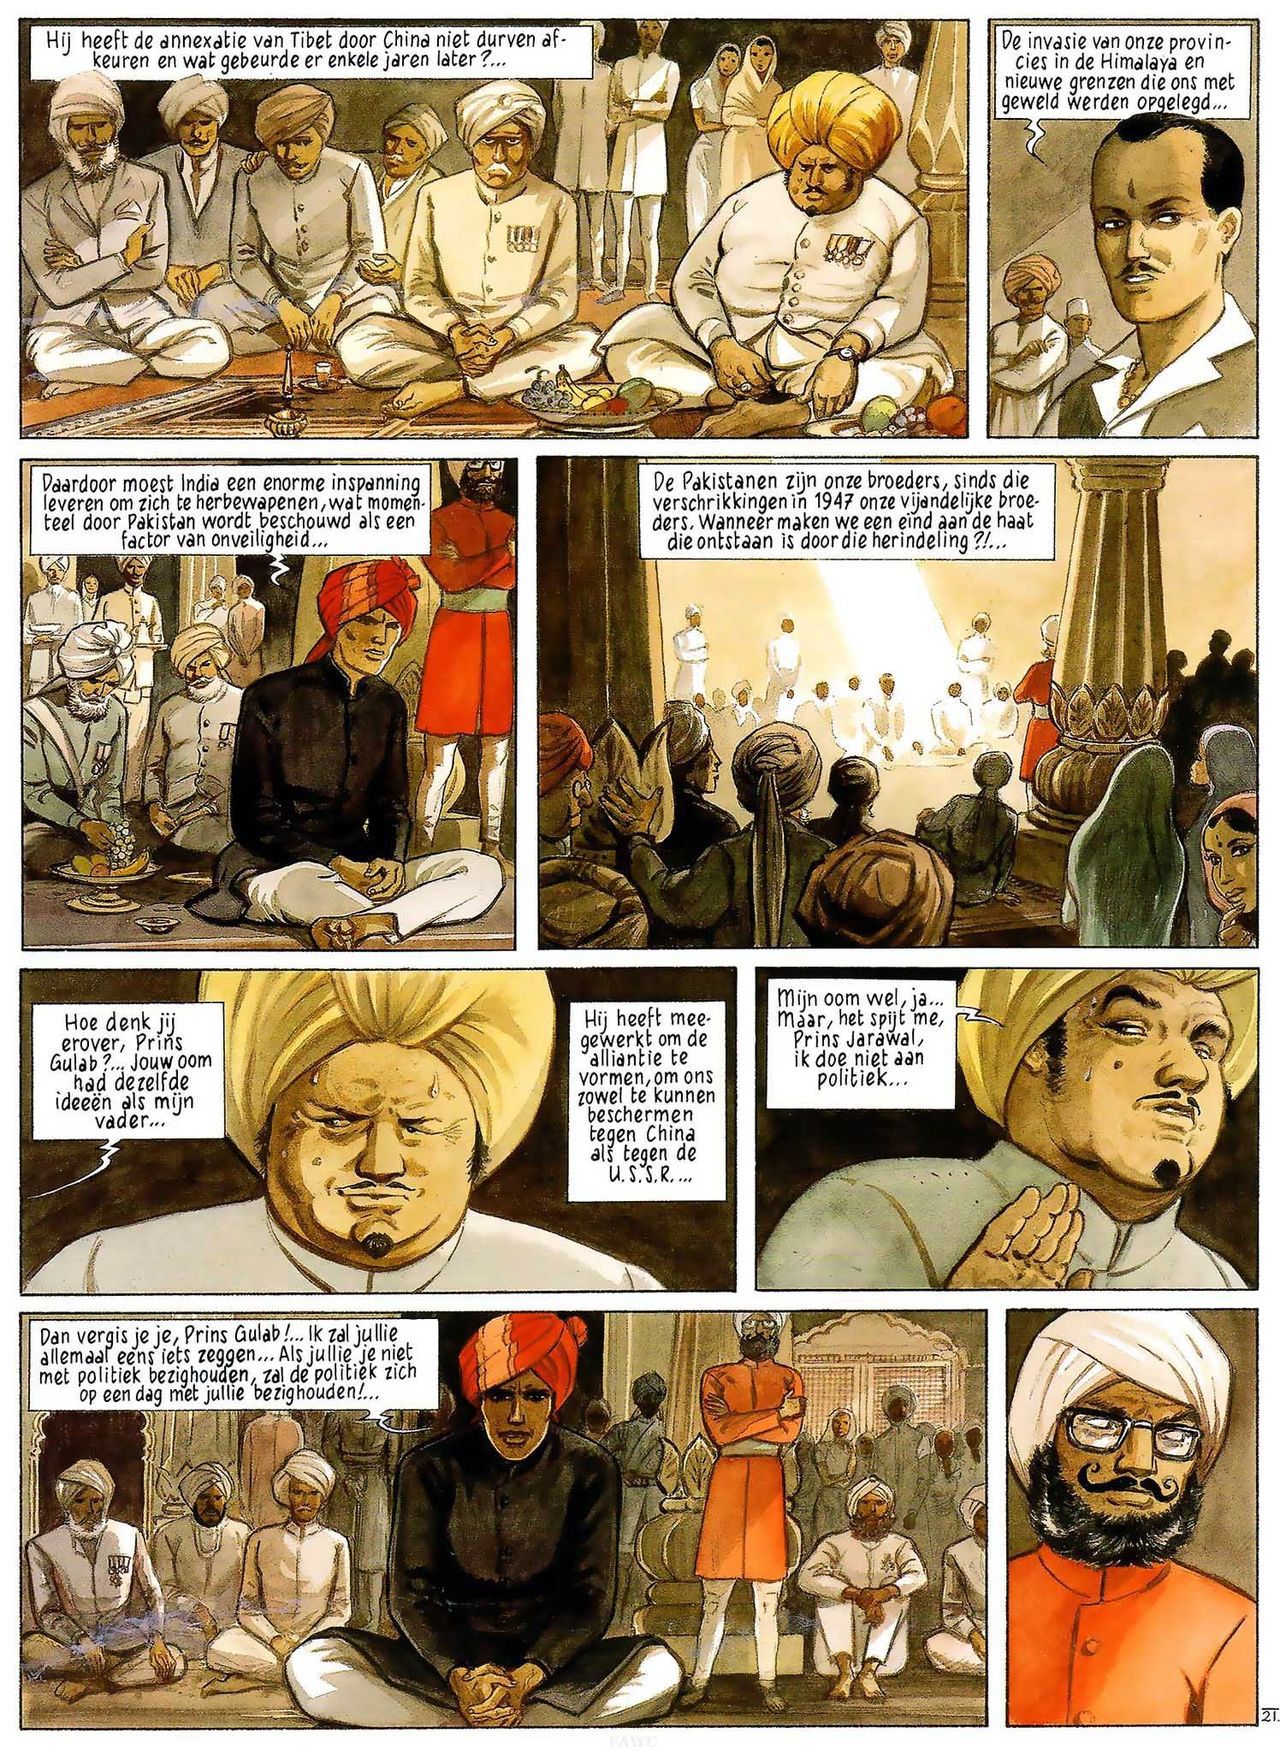 India Dreams - 03 - In De Schaduw Van De Bougainvilles (Dutch) Engelstalige en Duitse strips die op deze site staan, hier is de Nederlandse uitgave! 23